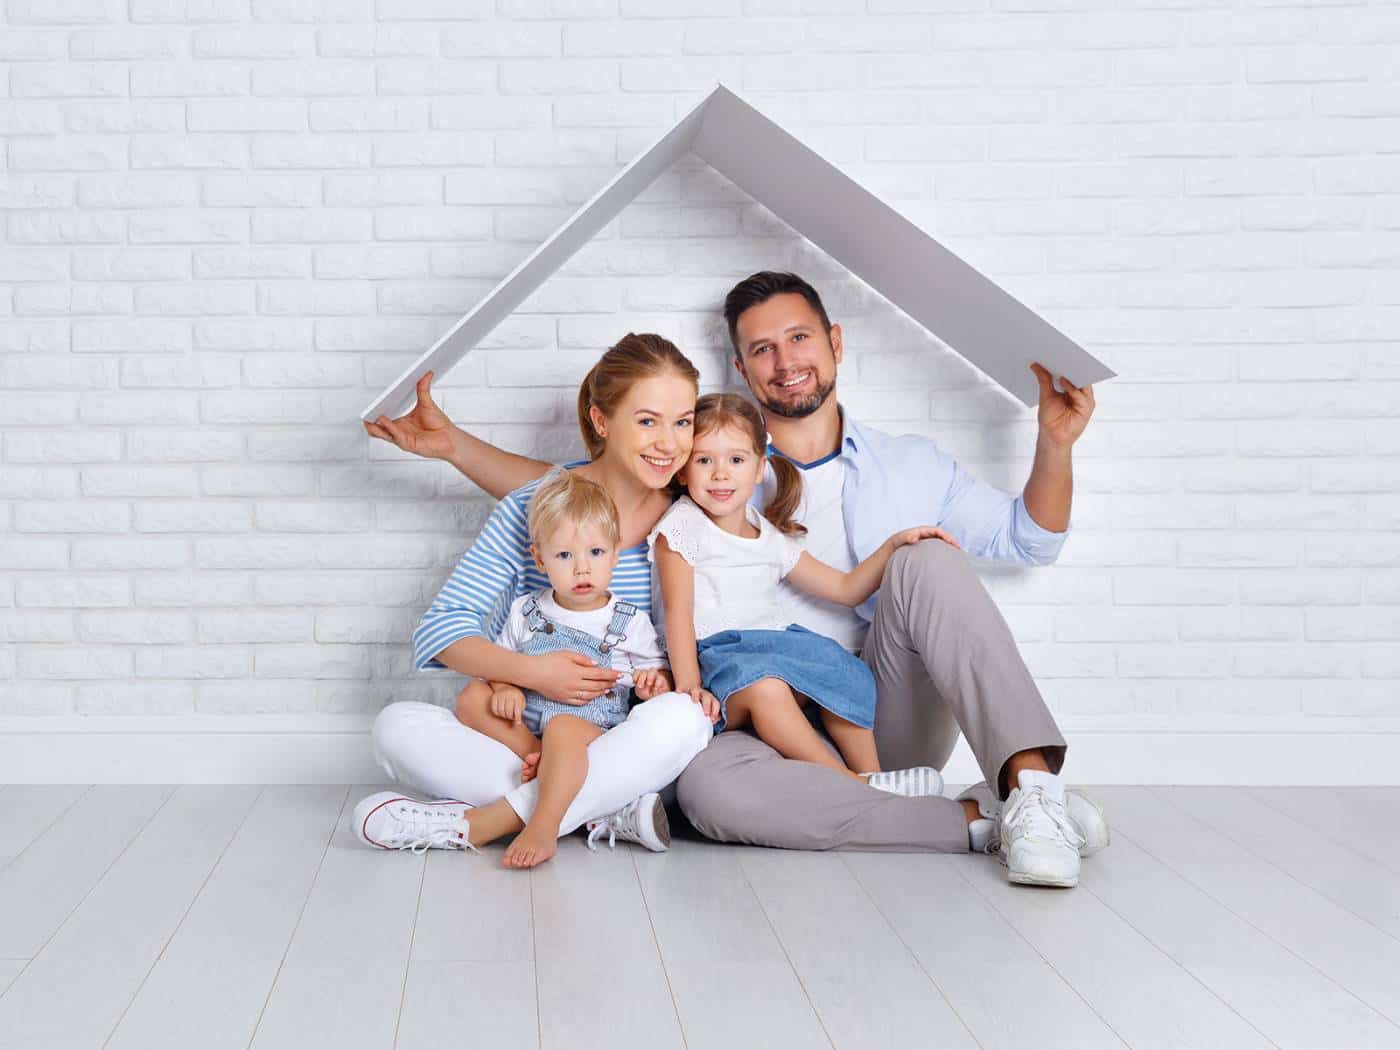 Mutui prima casa: scopri i migliori di oggi